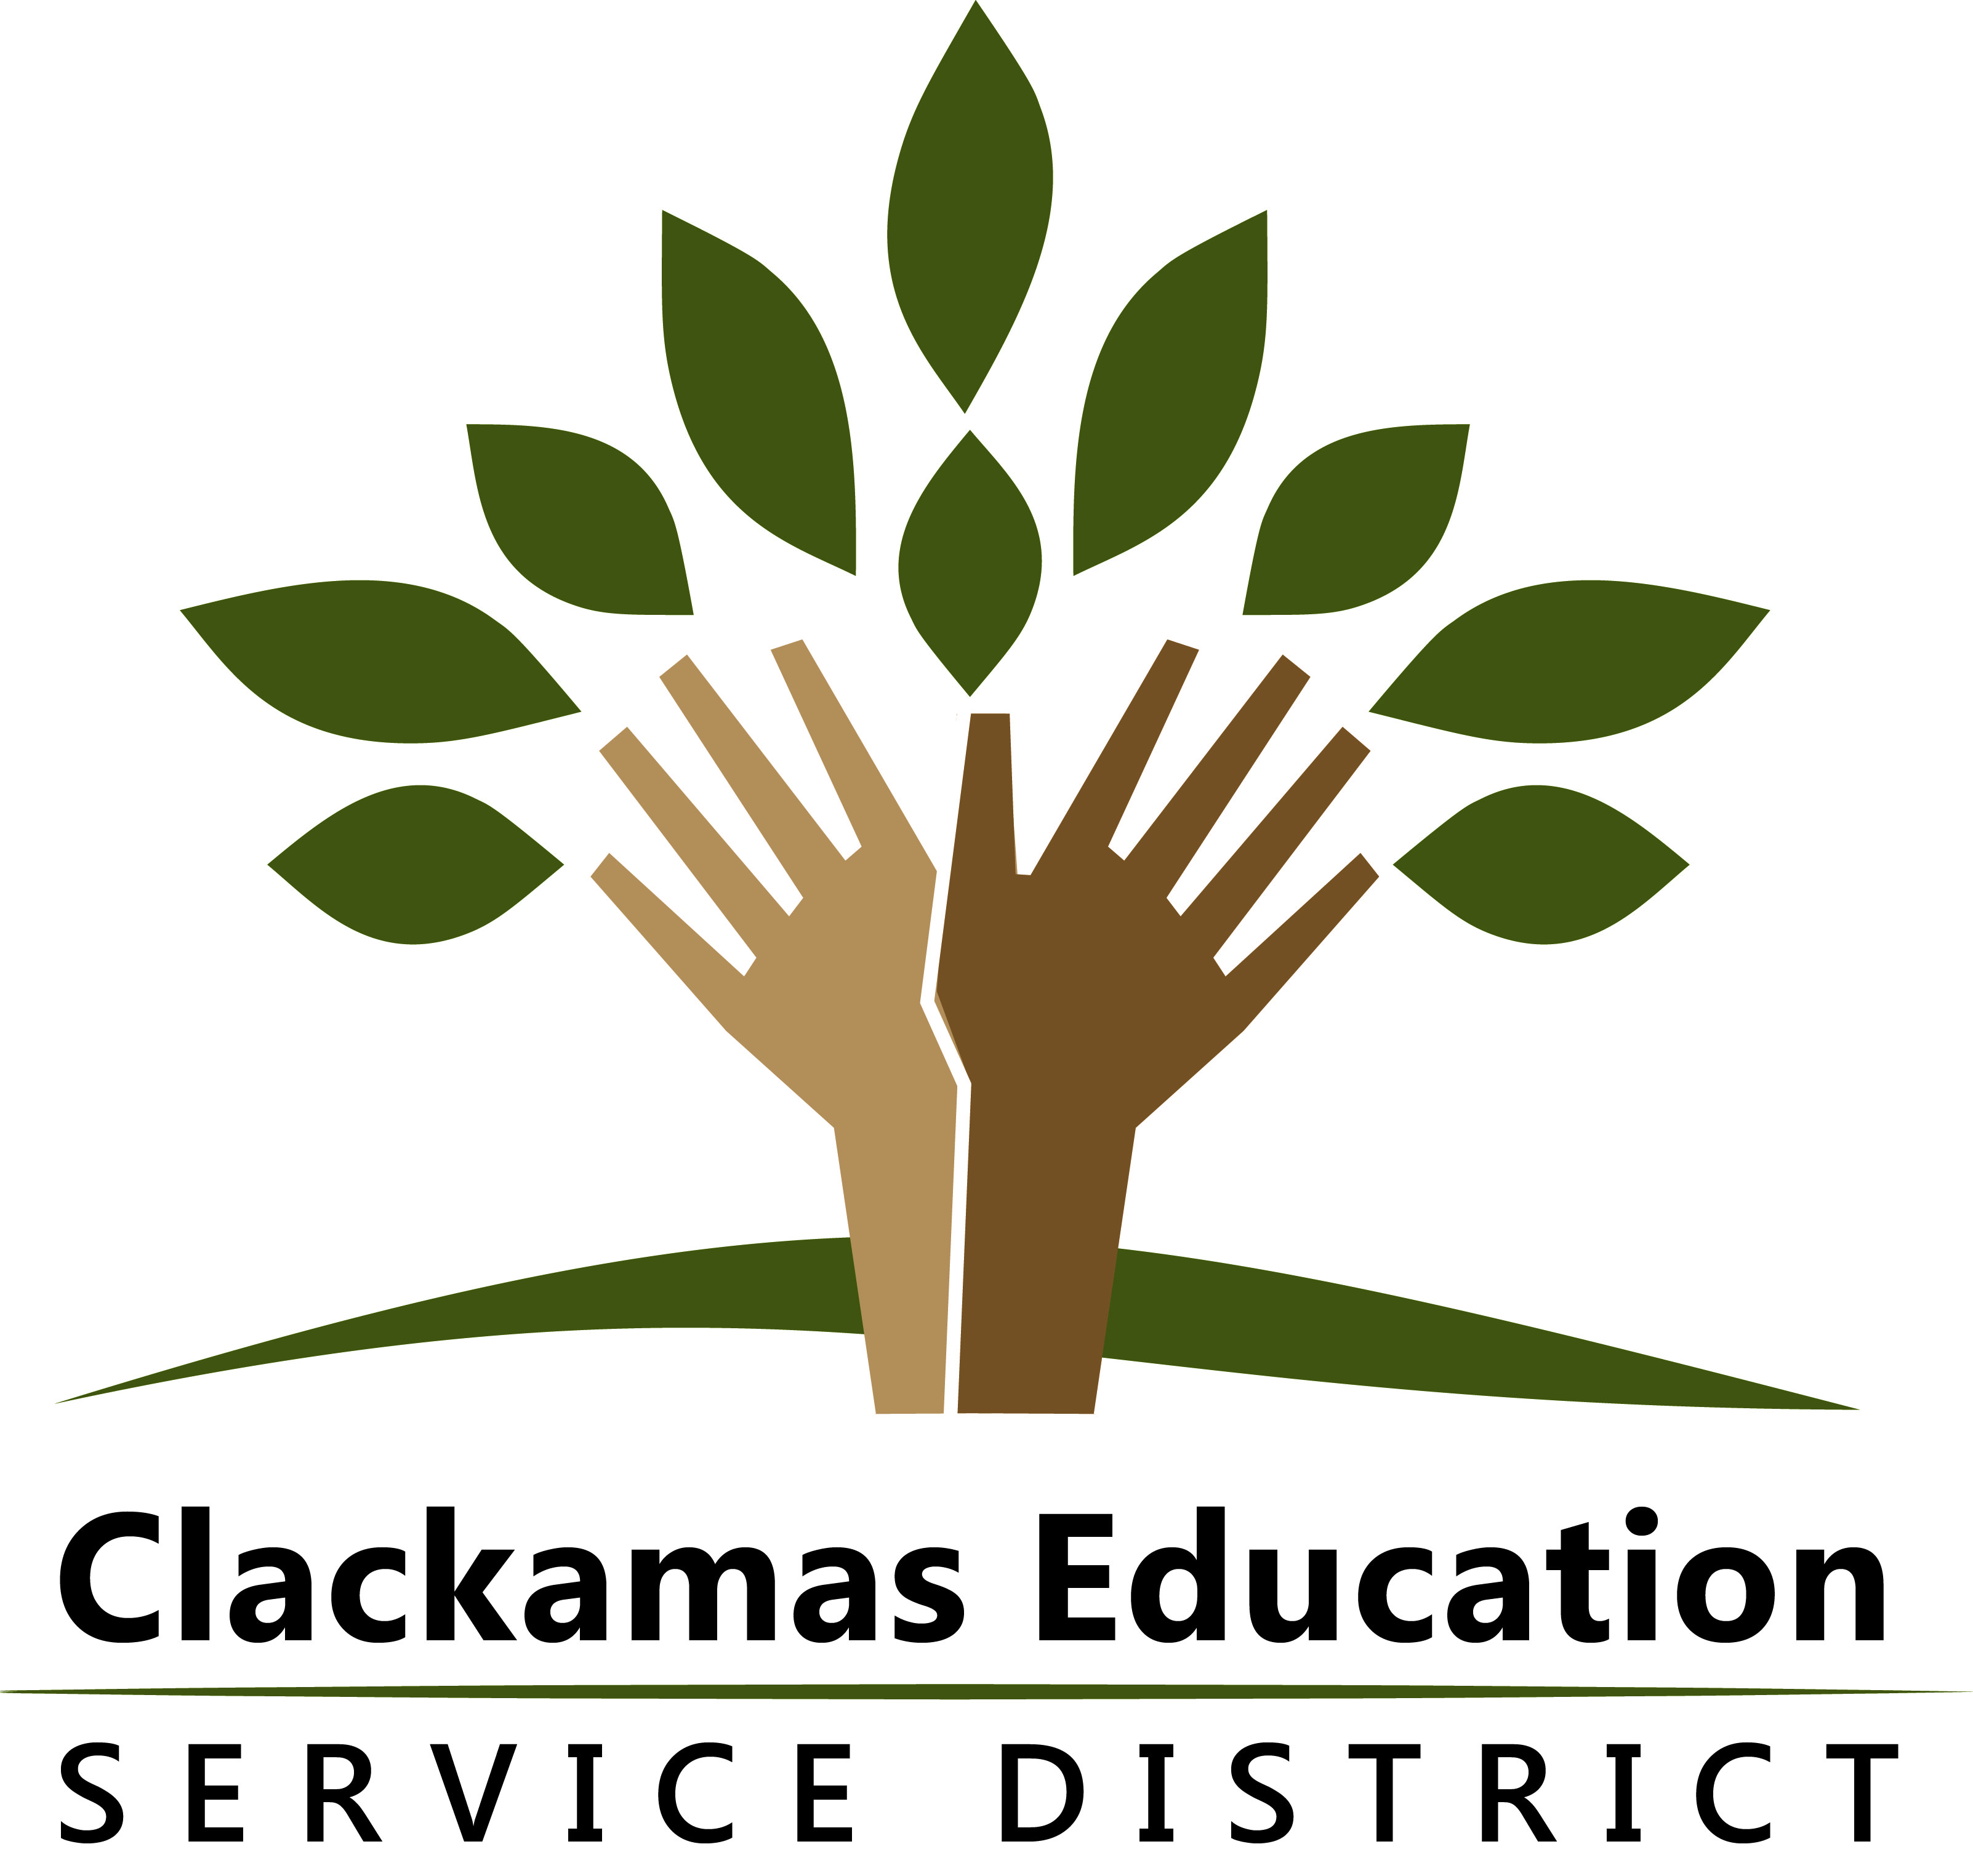 Clackamas Education Service District